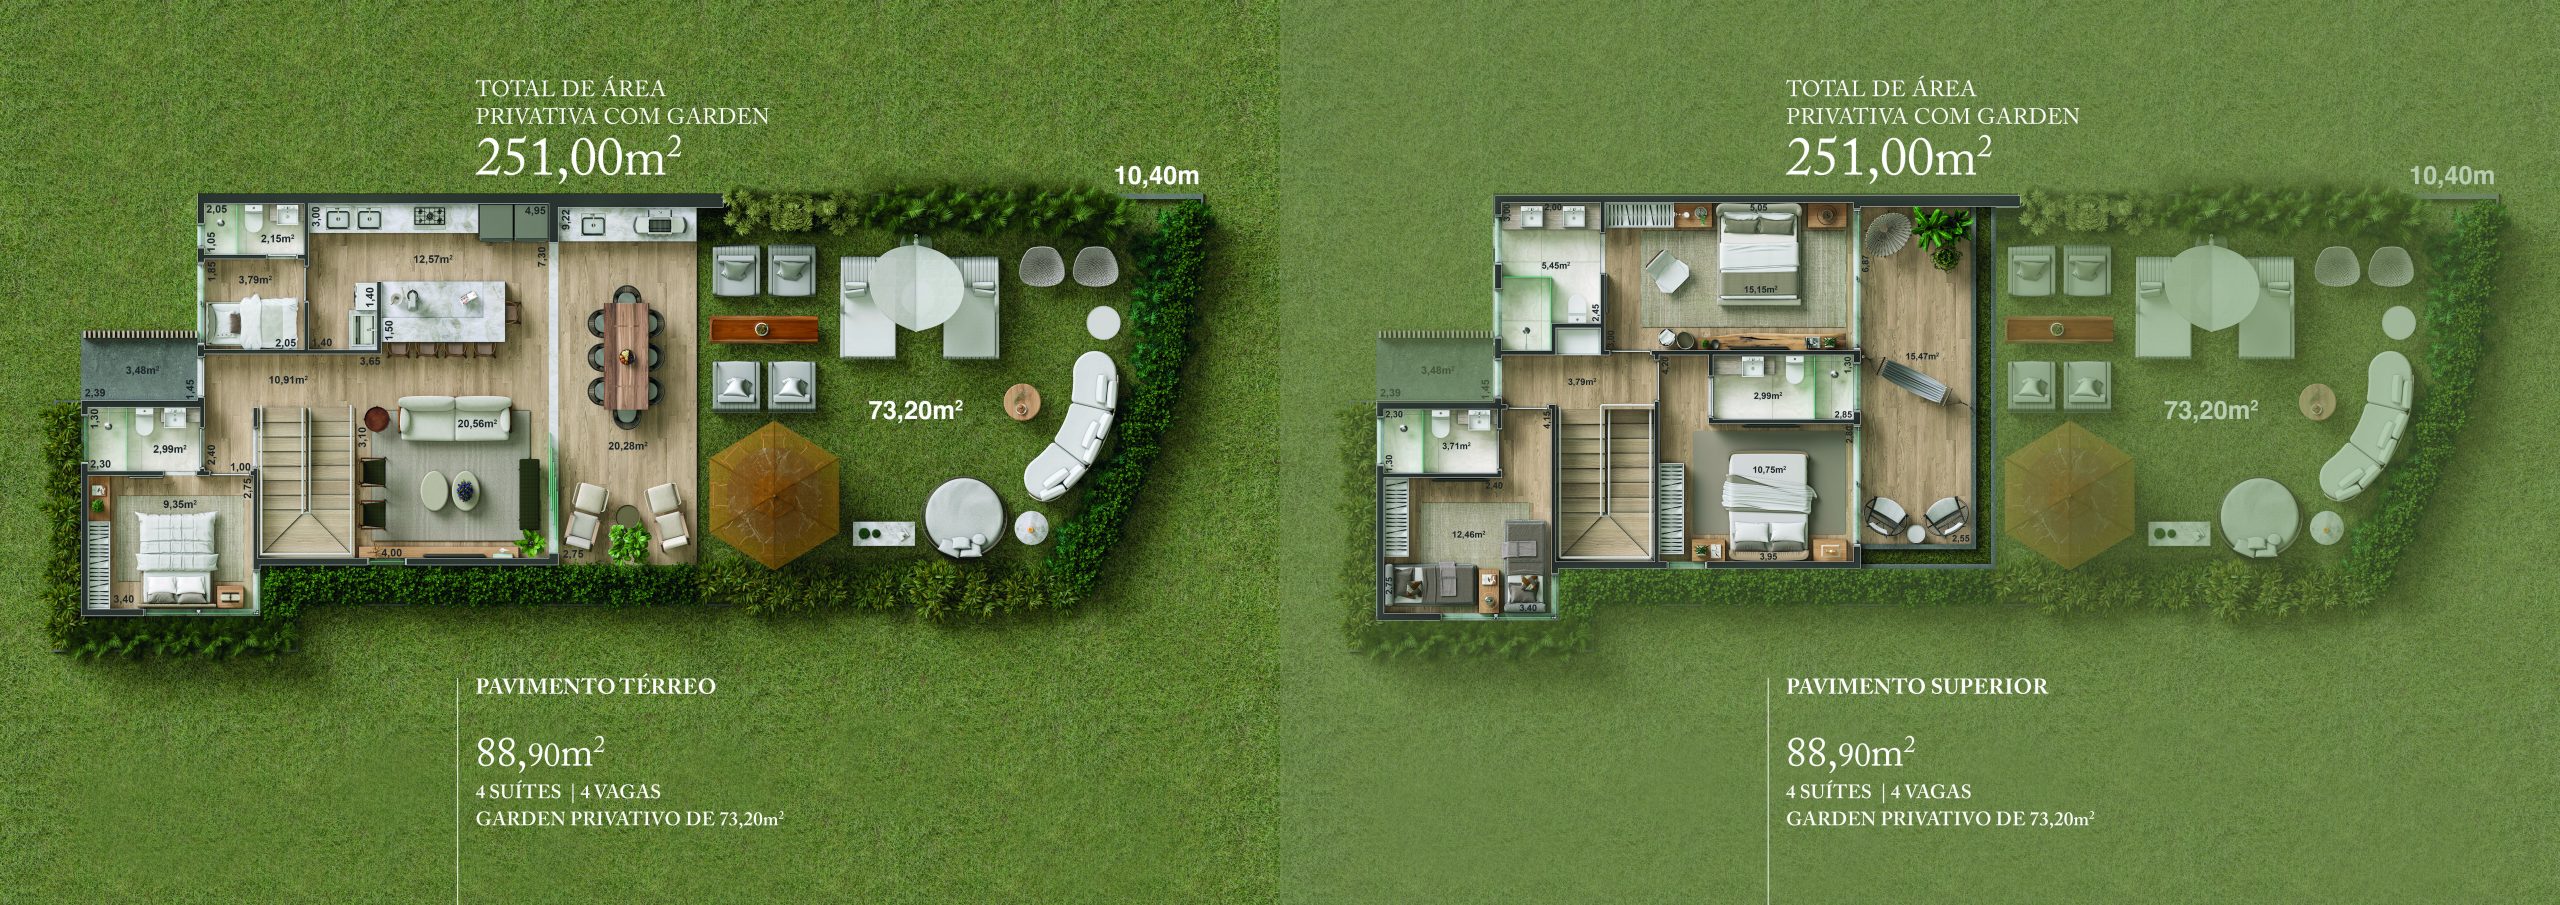 Casa - 251m² com garden